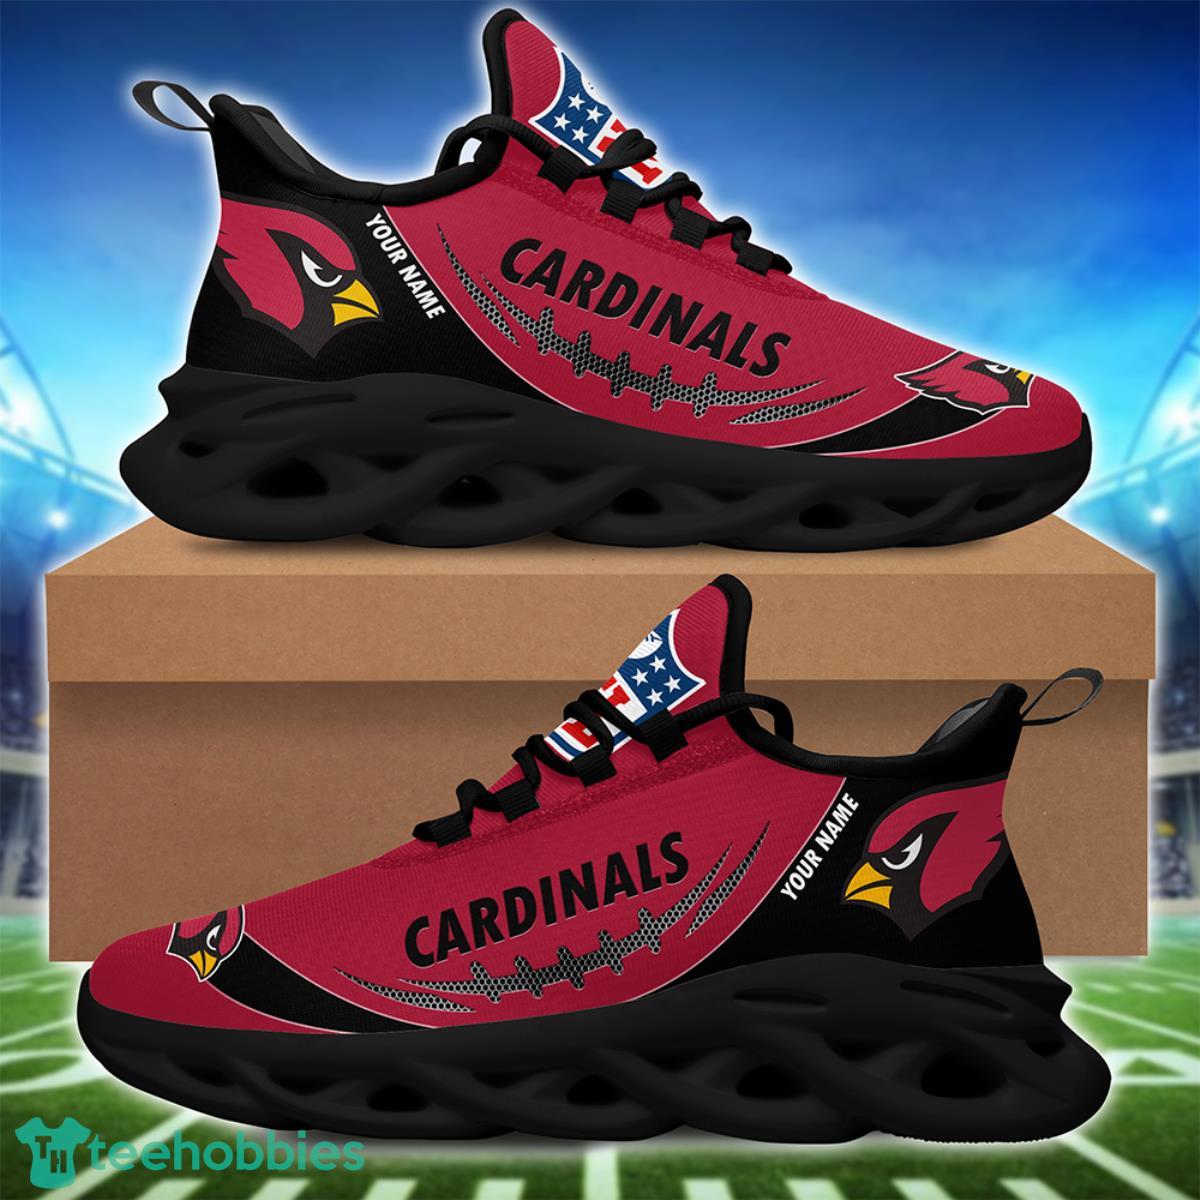 Arizona Cardinals Custom Name Air Jordan 11 Sneaker Shoes For